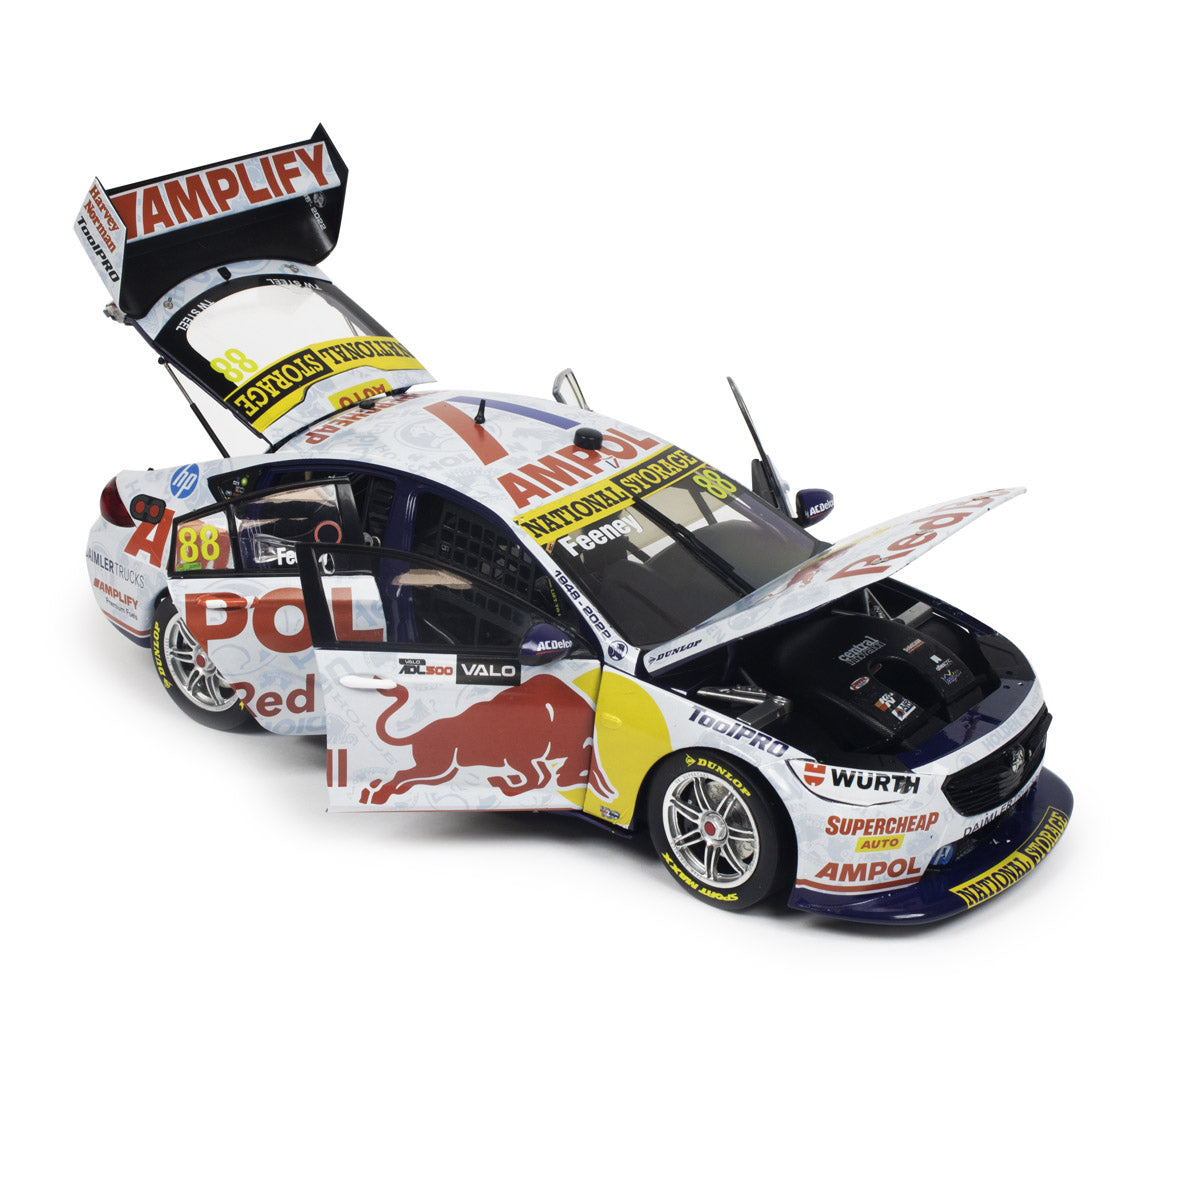 Holden ZB Commodore - Red Bull Ampol Racing - Feeney #88 - 2022 Valo Adelaide 500 Race 34 Winner (Feeney's 1st Race Win)